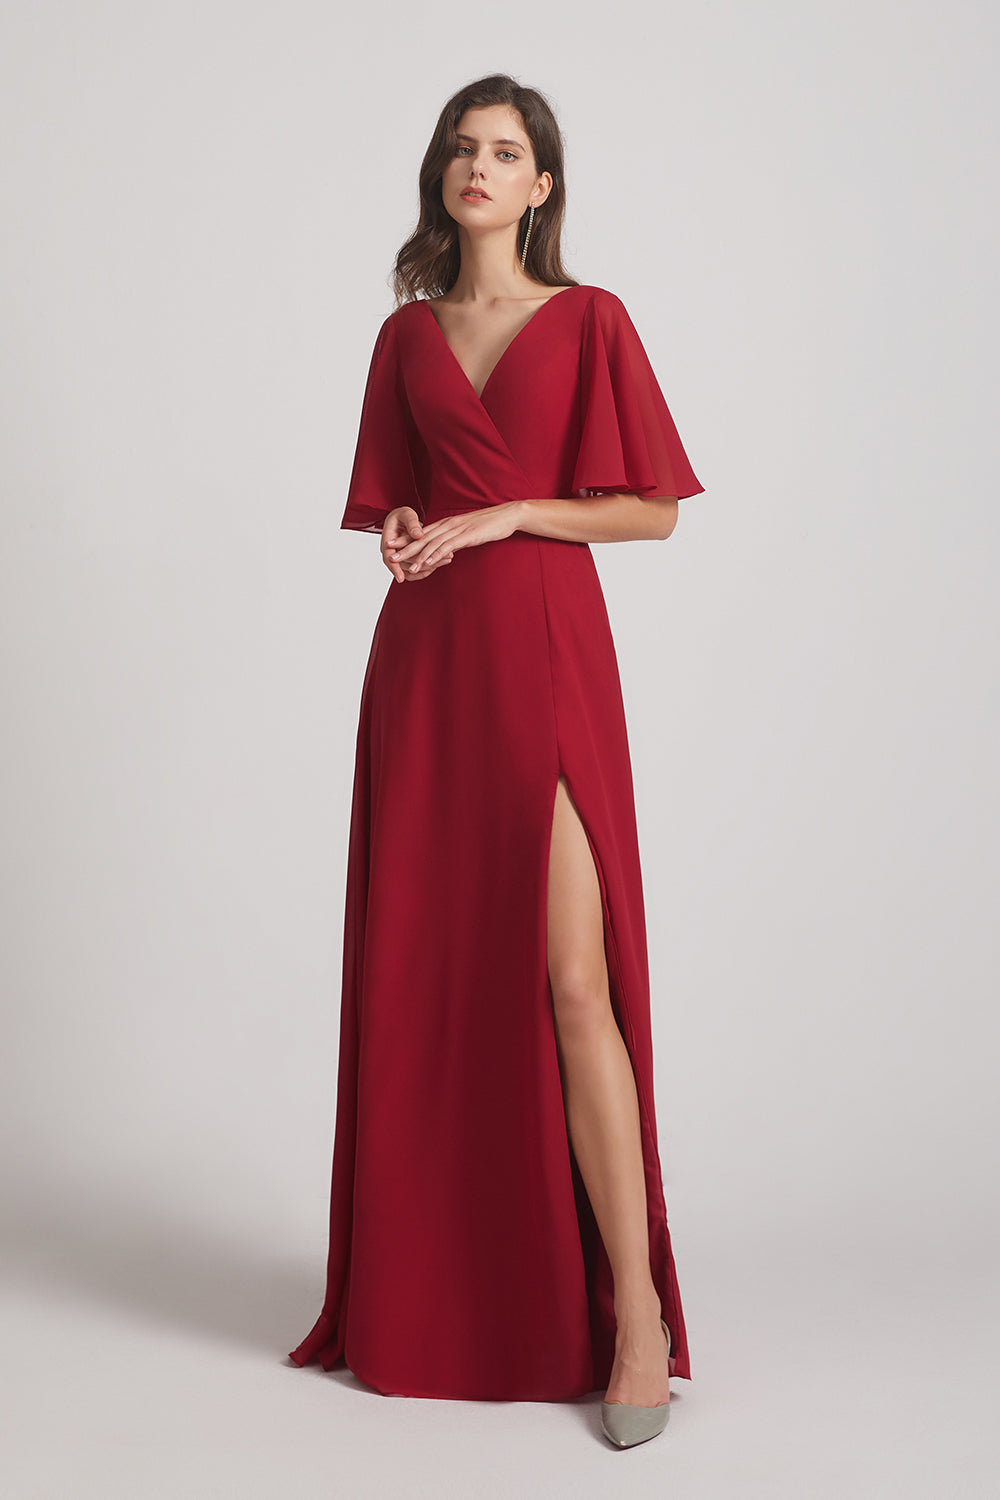 Alfa Bridal Dark Red V-Neck Chiffon Side Slit Bridesmaid Dresses With Flutter Half Sleeves (AF0056)